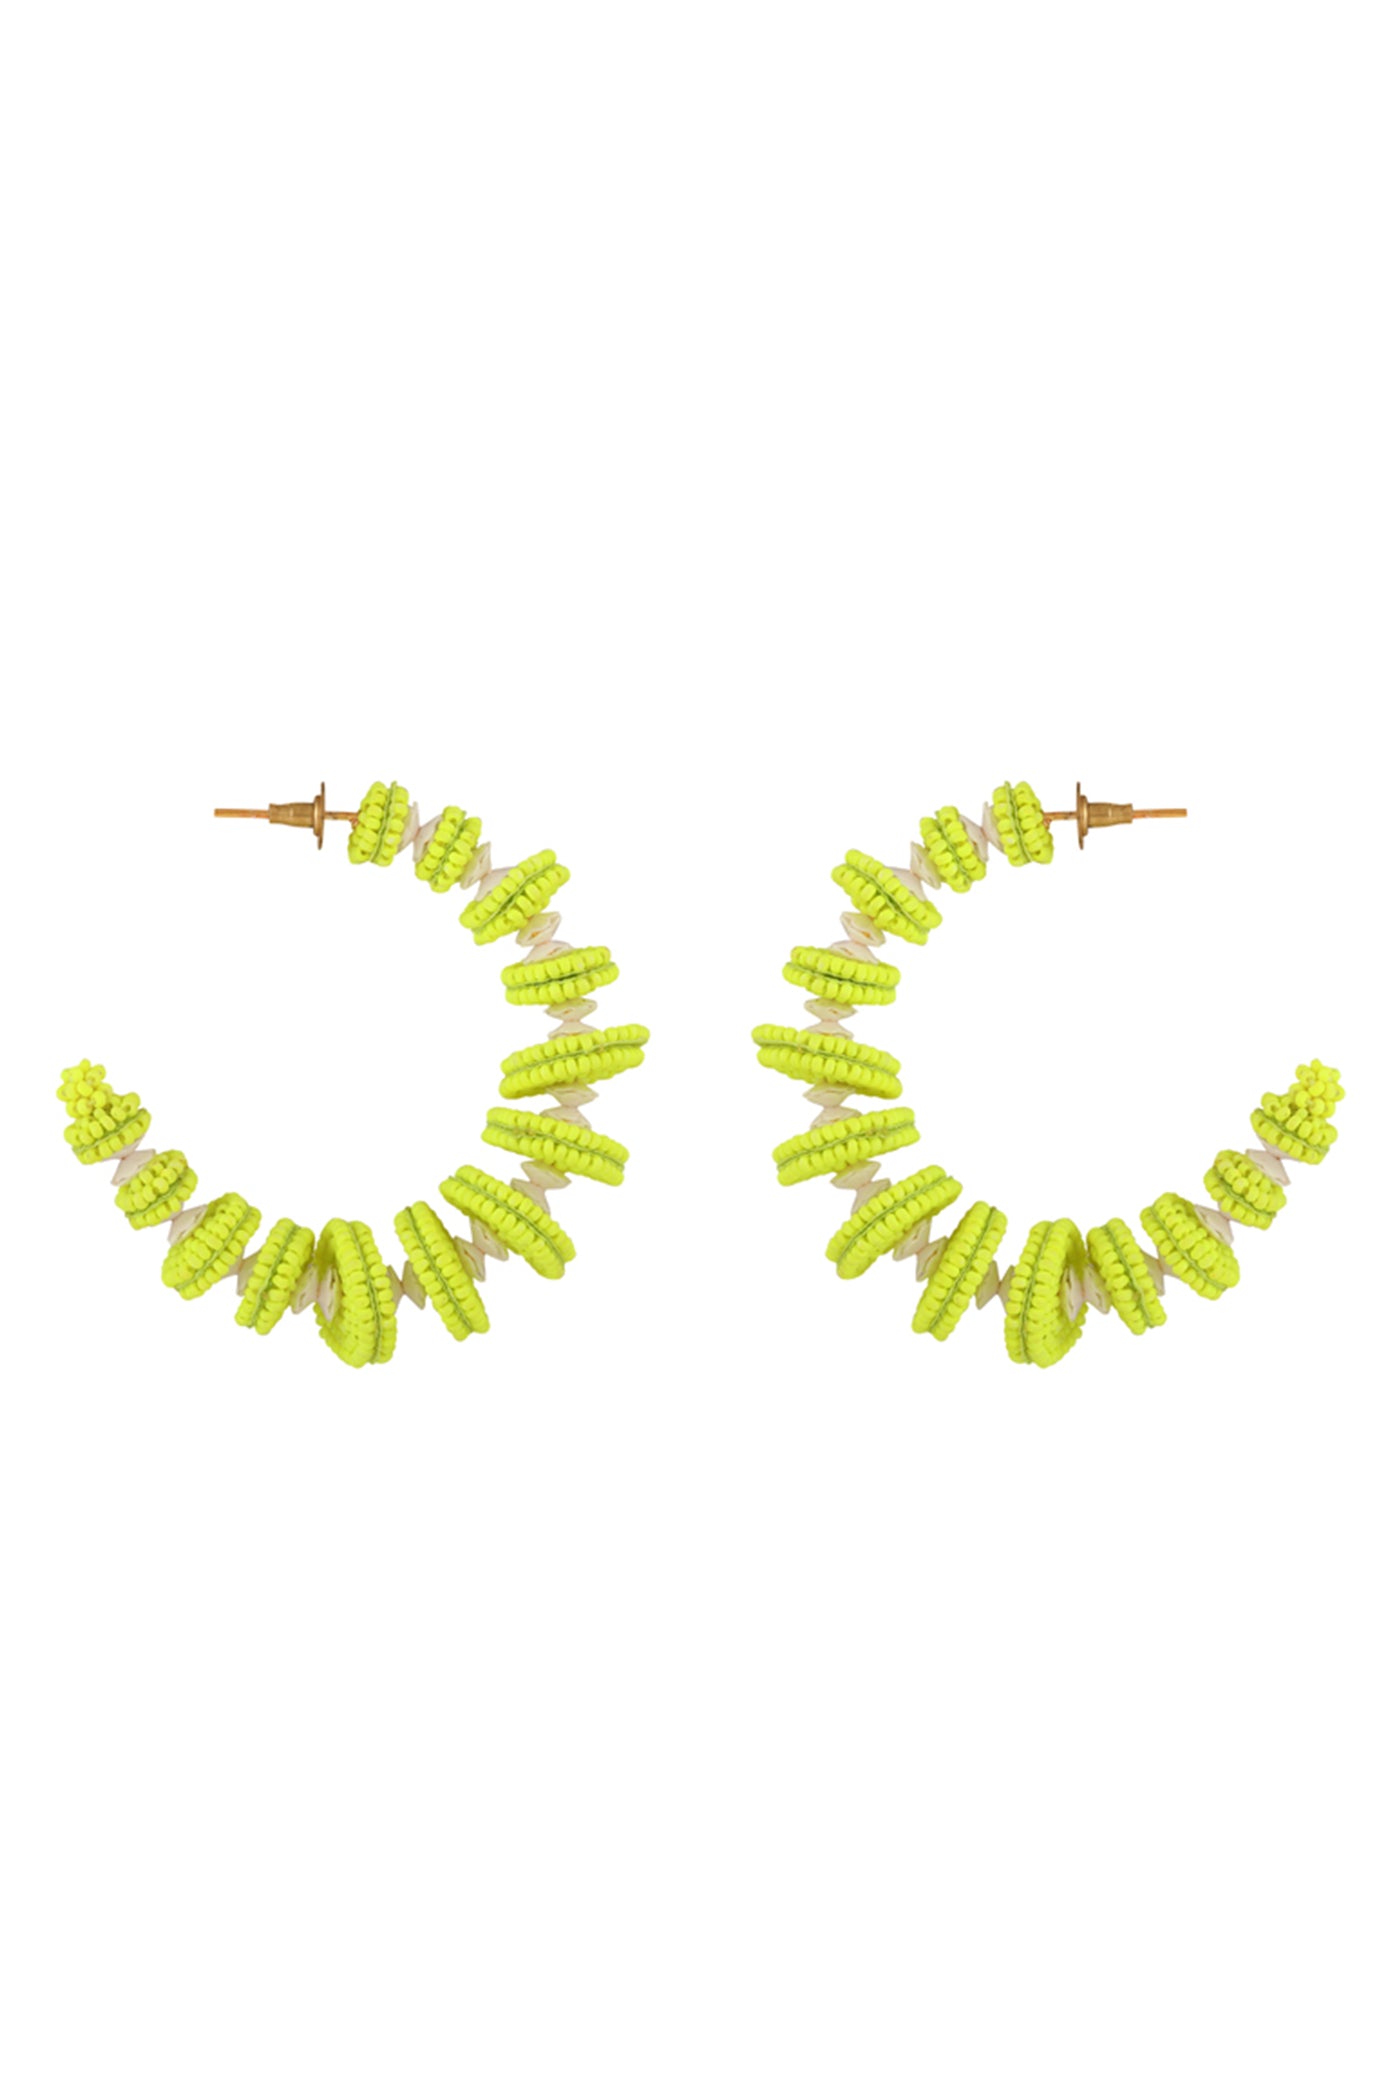 Neon Green "Deconstruct" Hoop Earrings